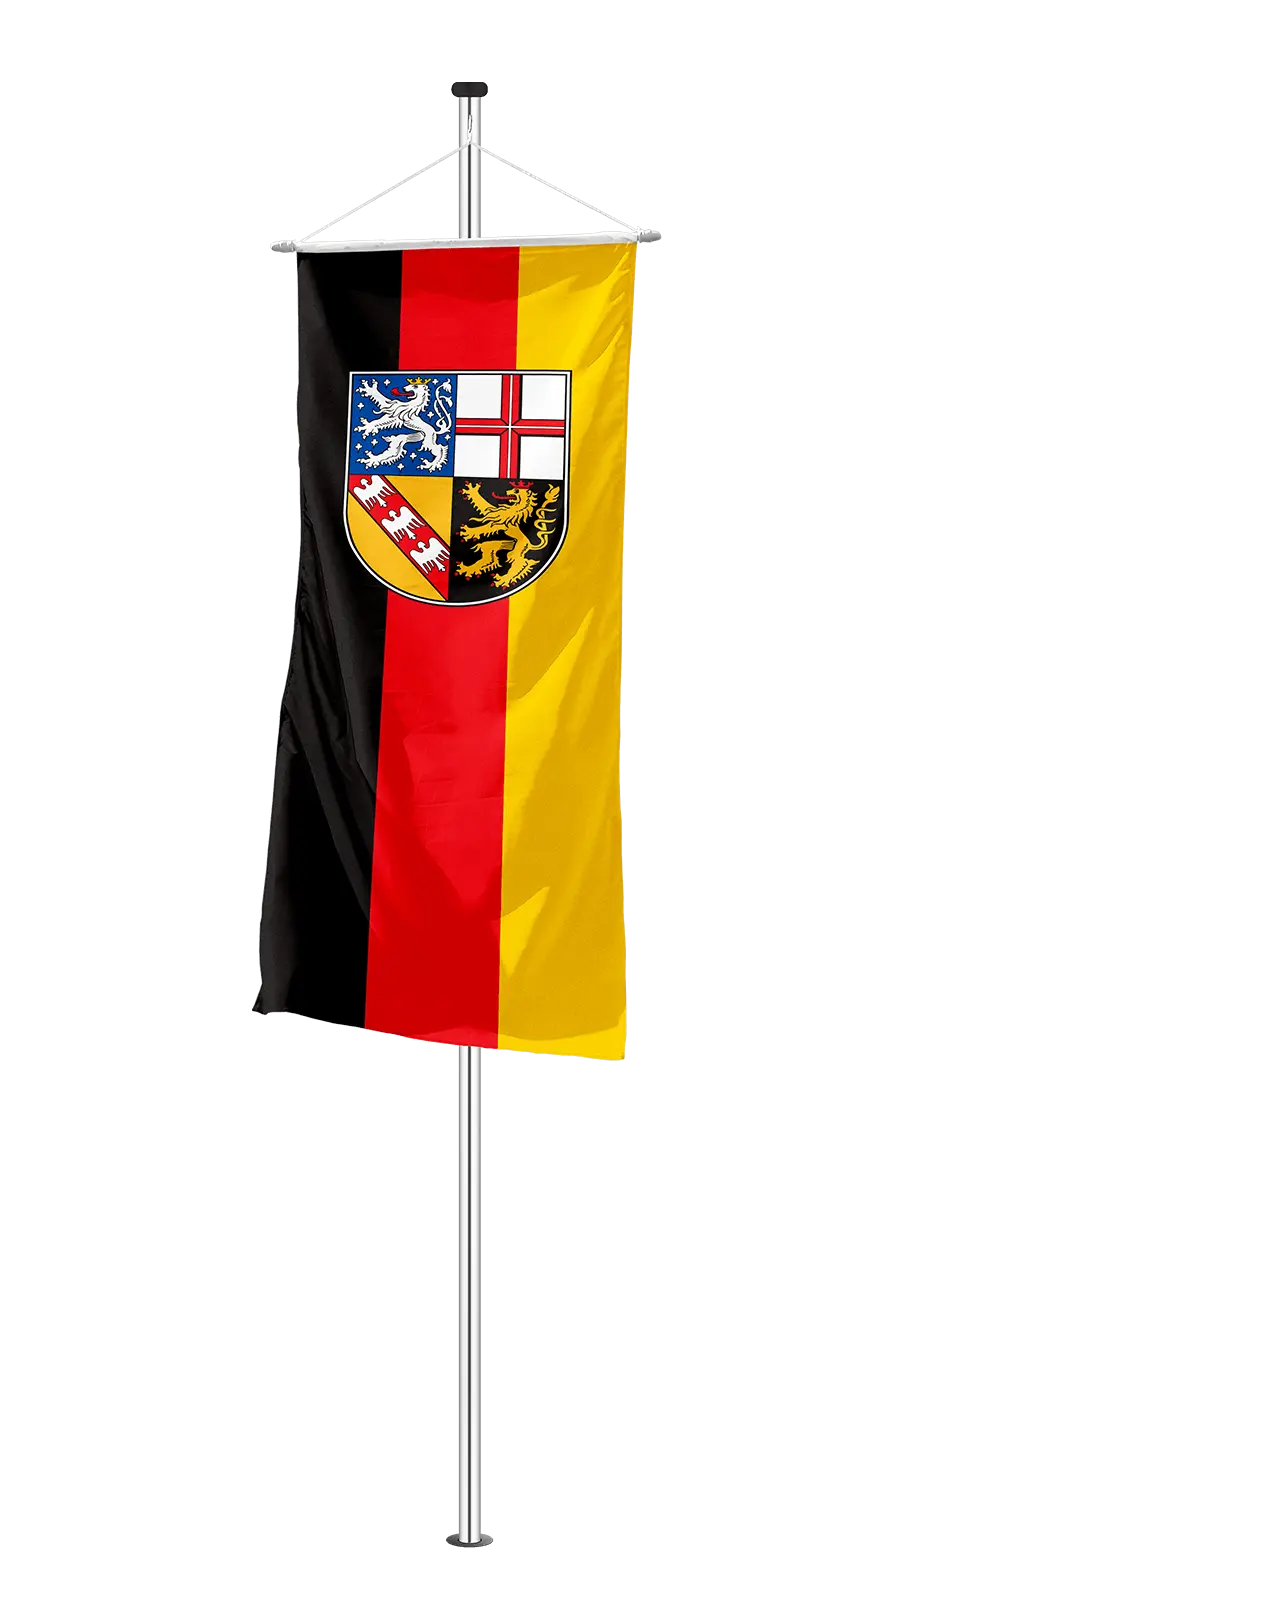 Bannerfahne Saarland mit Wappen